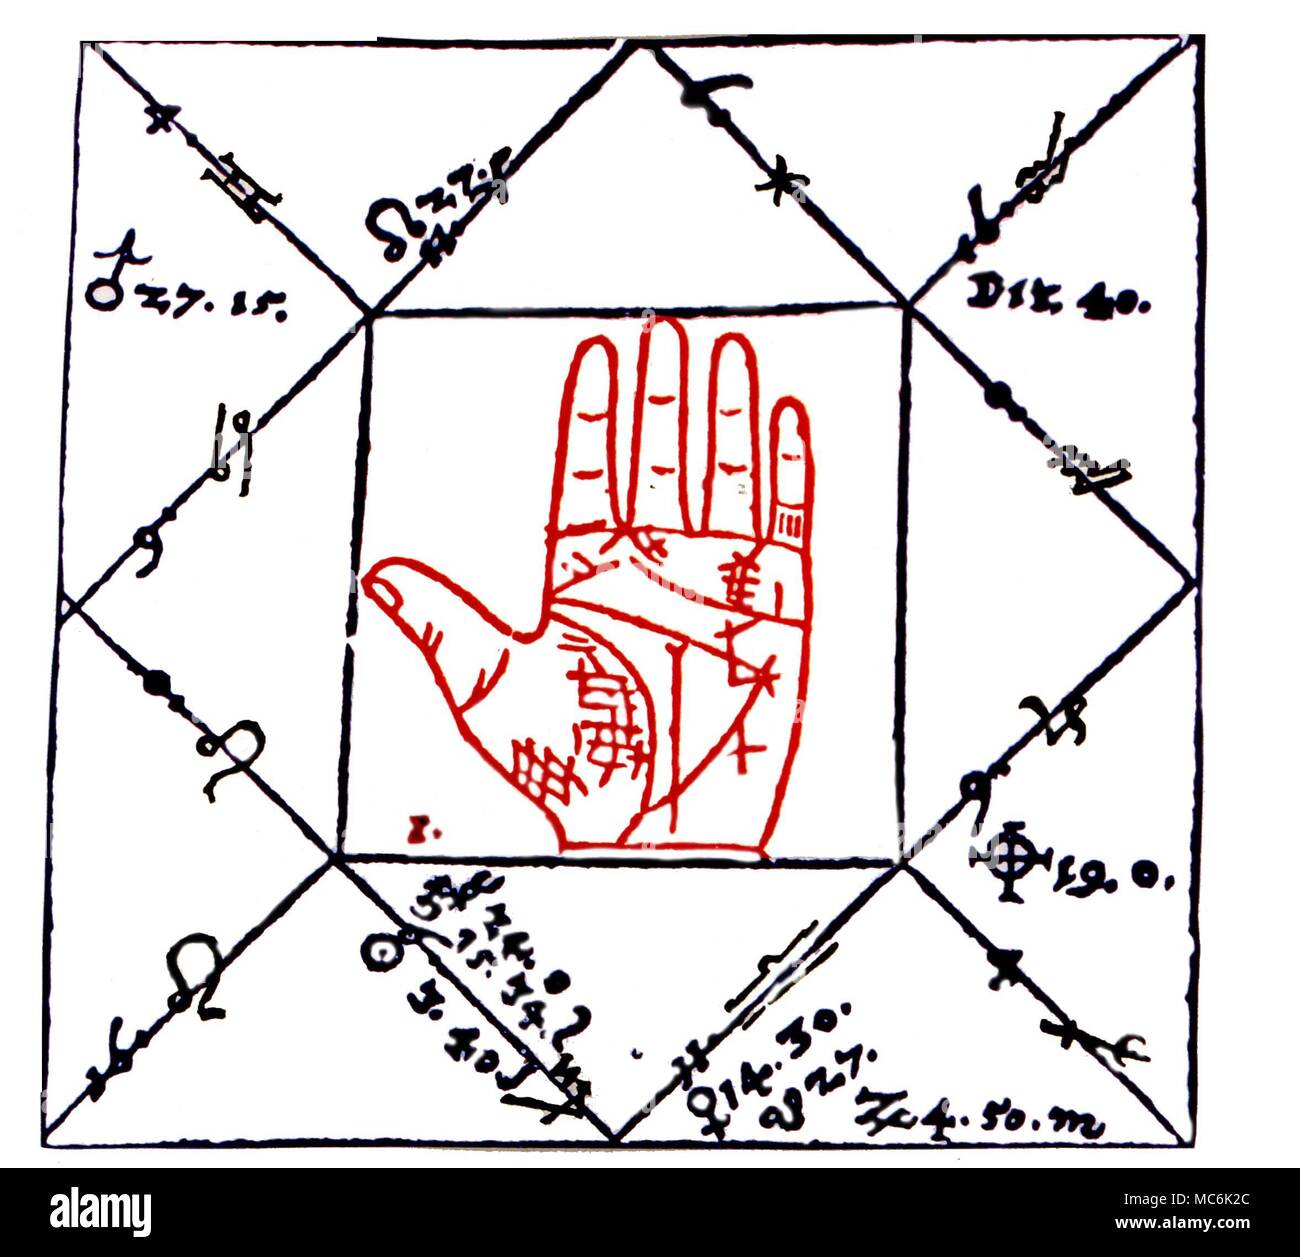 Chiromanzia - stampa combinando chiromanzia e astrologia - la mano è correlato all'oroscopo, cast per il 17 agosto 1567. Da Joannes Rothmann 'Chiromantiae Theoretica Practica' 1505 Foto Stock